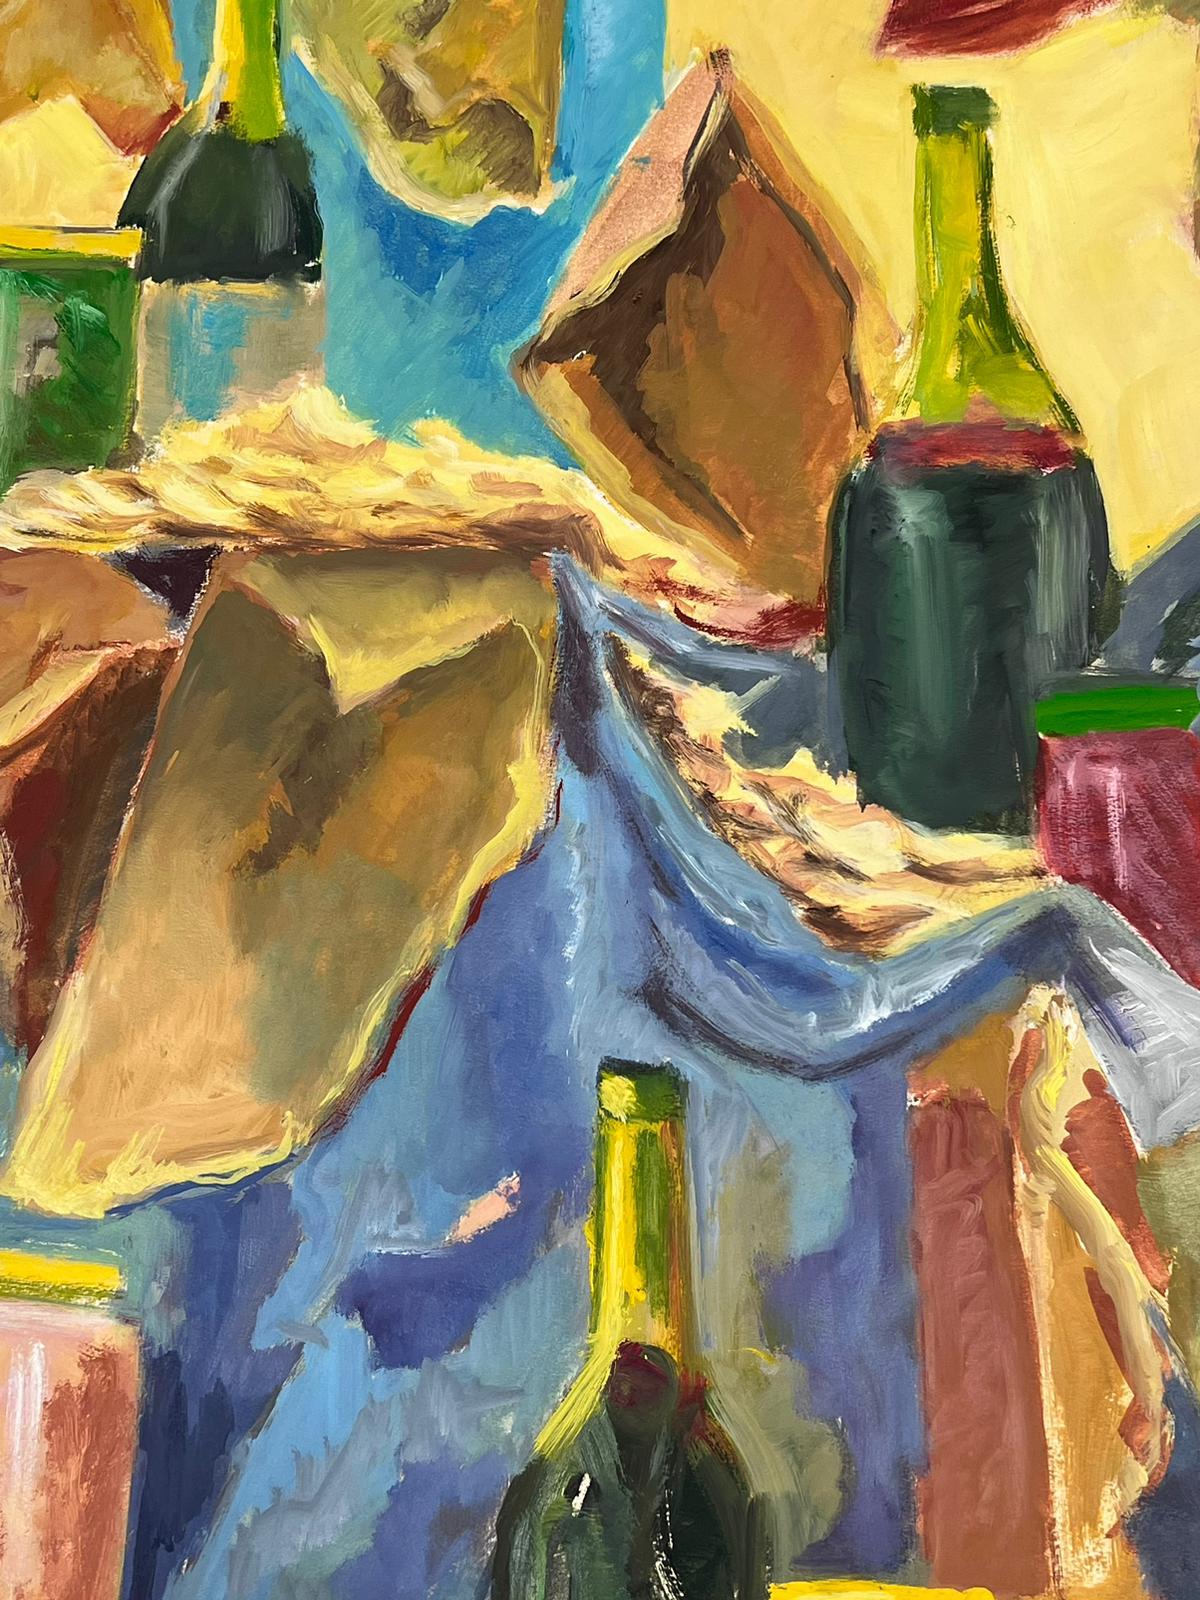 Champagne
par Guy Nicod
(Français 1923 - 2021)
huile sur papier d'artiste, non encadrée
peinture : 26 x 19.5 pouces
provenance : succession d'artistes, France
état : très bon et sain